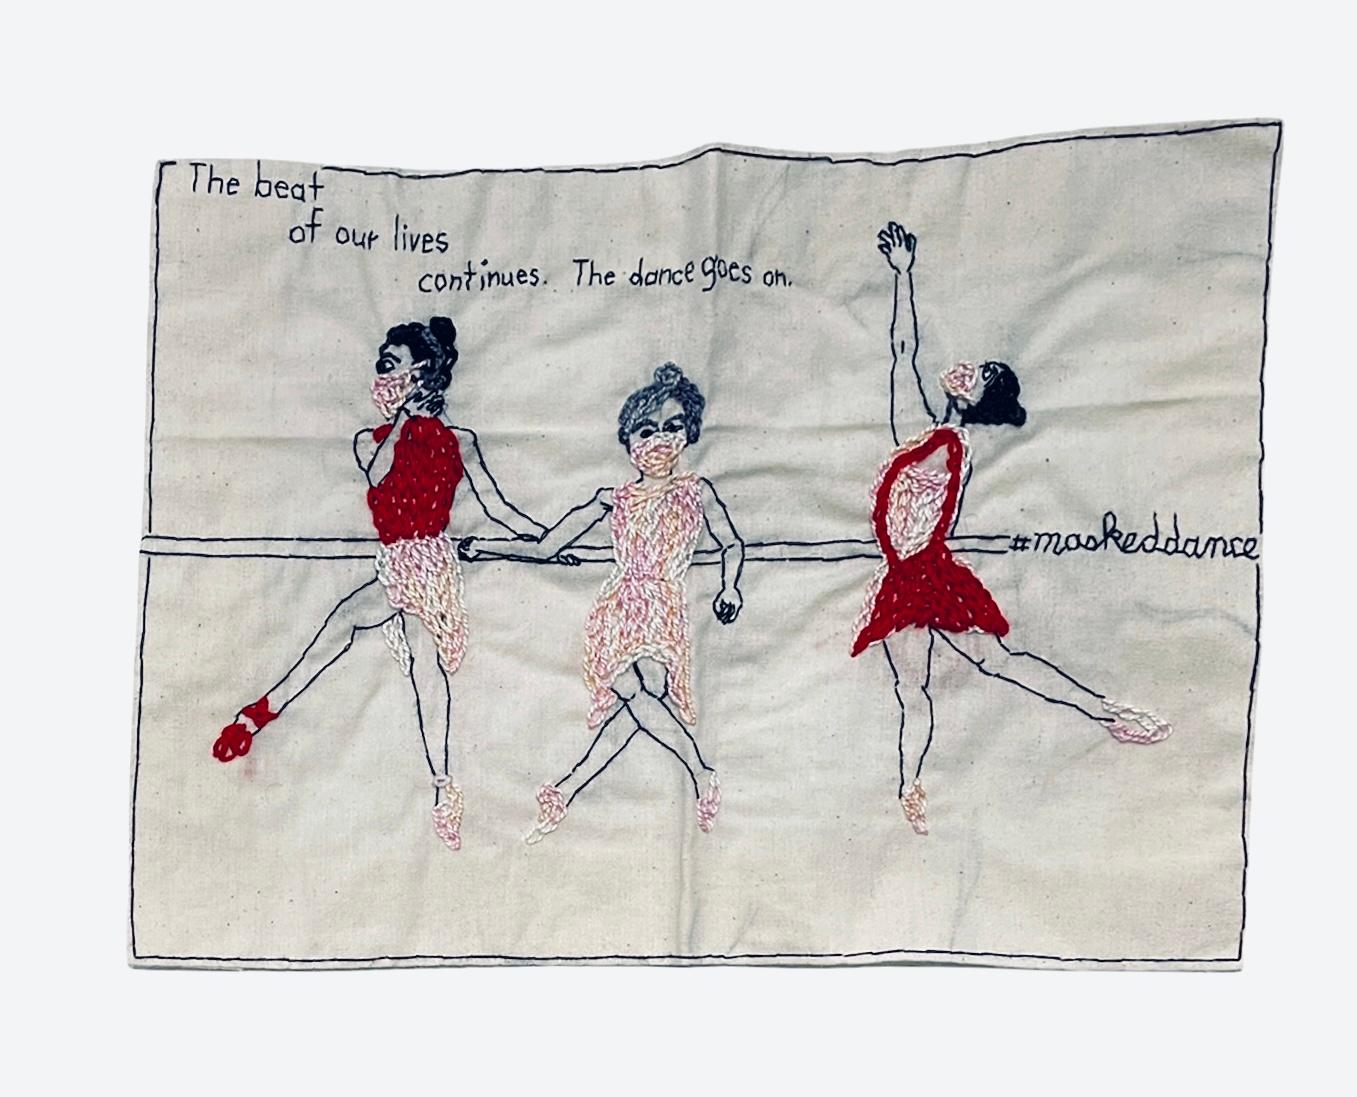 La danse se poursuit - broderie narrative amoureuse sur tissu vintage avec ballerines - Mixed Media Art de Iviva Olenick